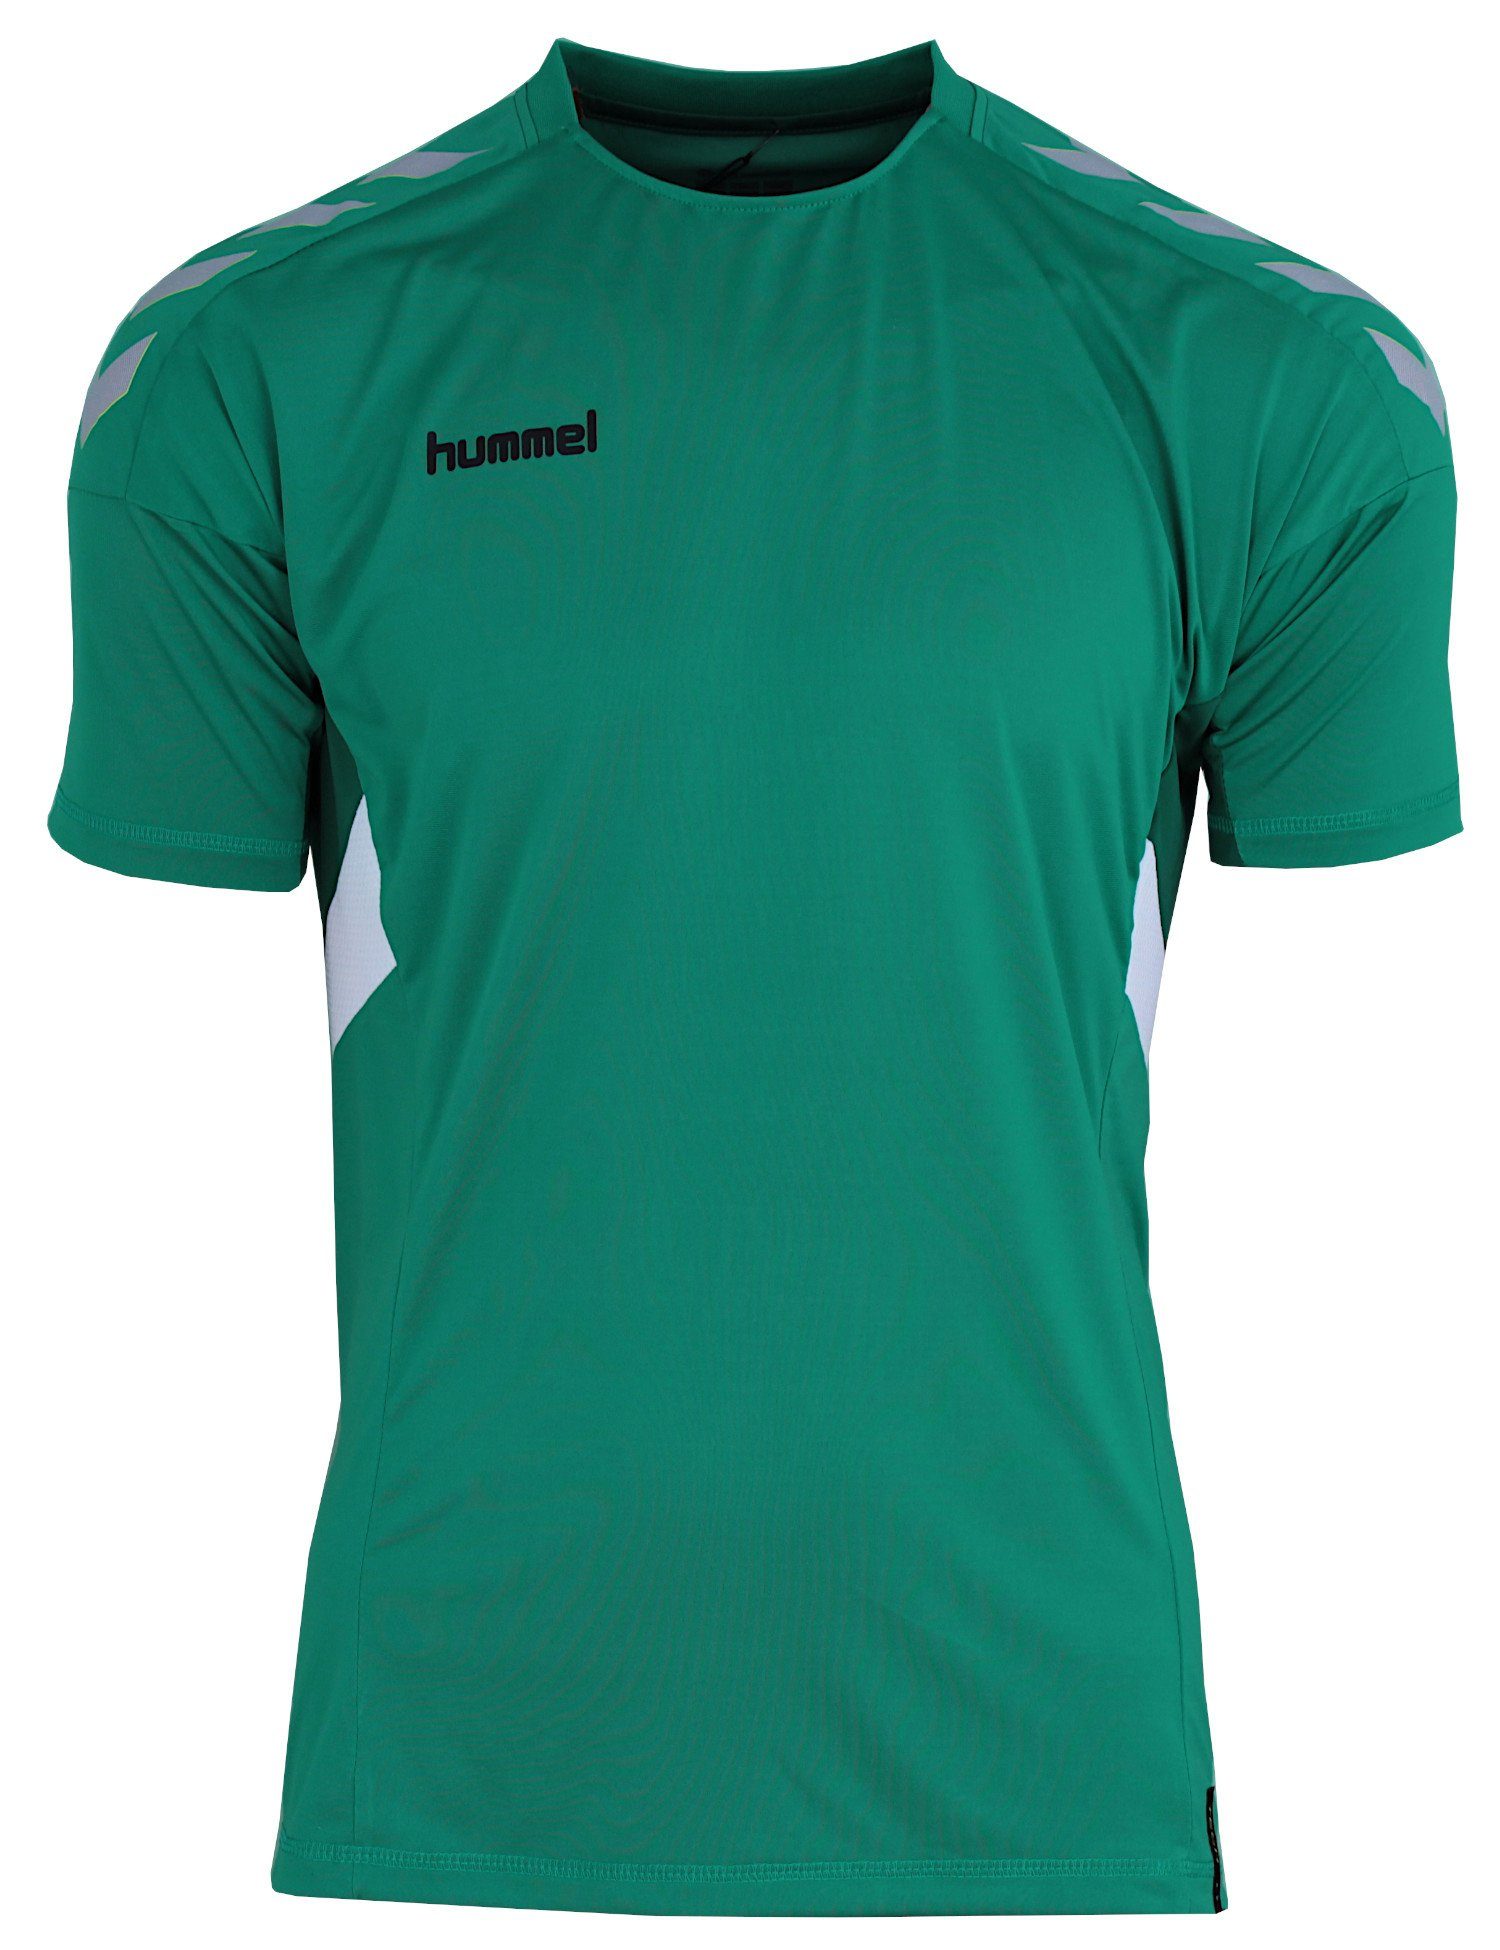 Move Trainingsshirt Grün Optimale (Sports Green) Tech schnelltrocknend Trikot Atmungsaktivität, Shirt hummel